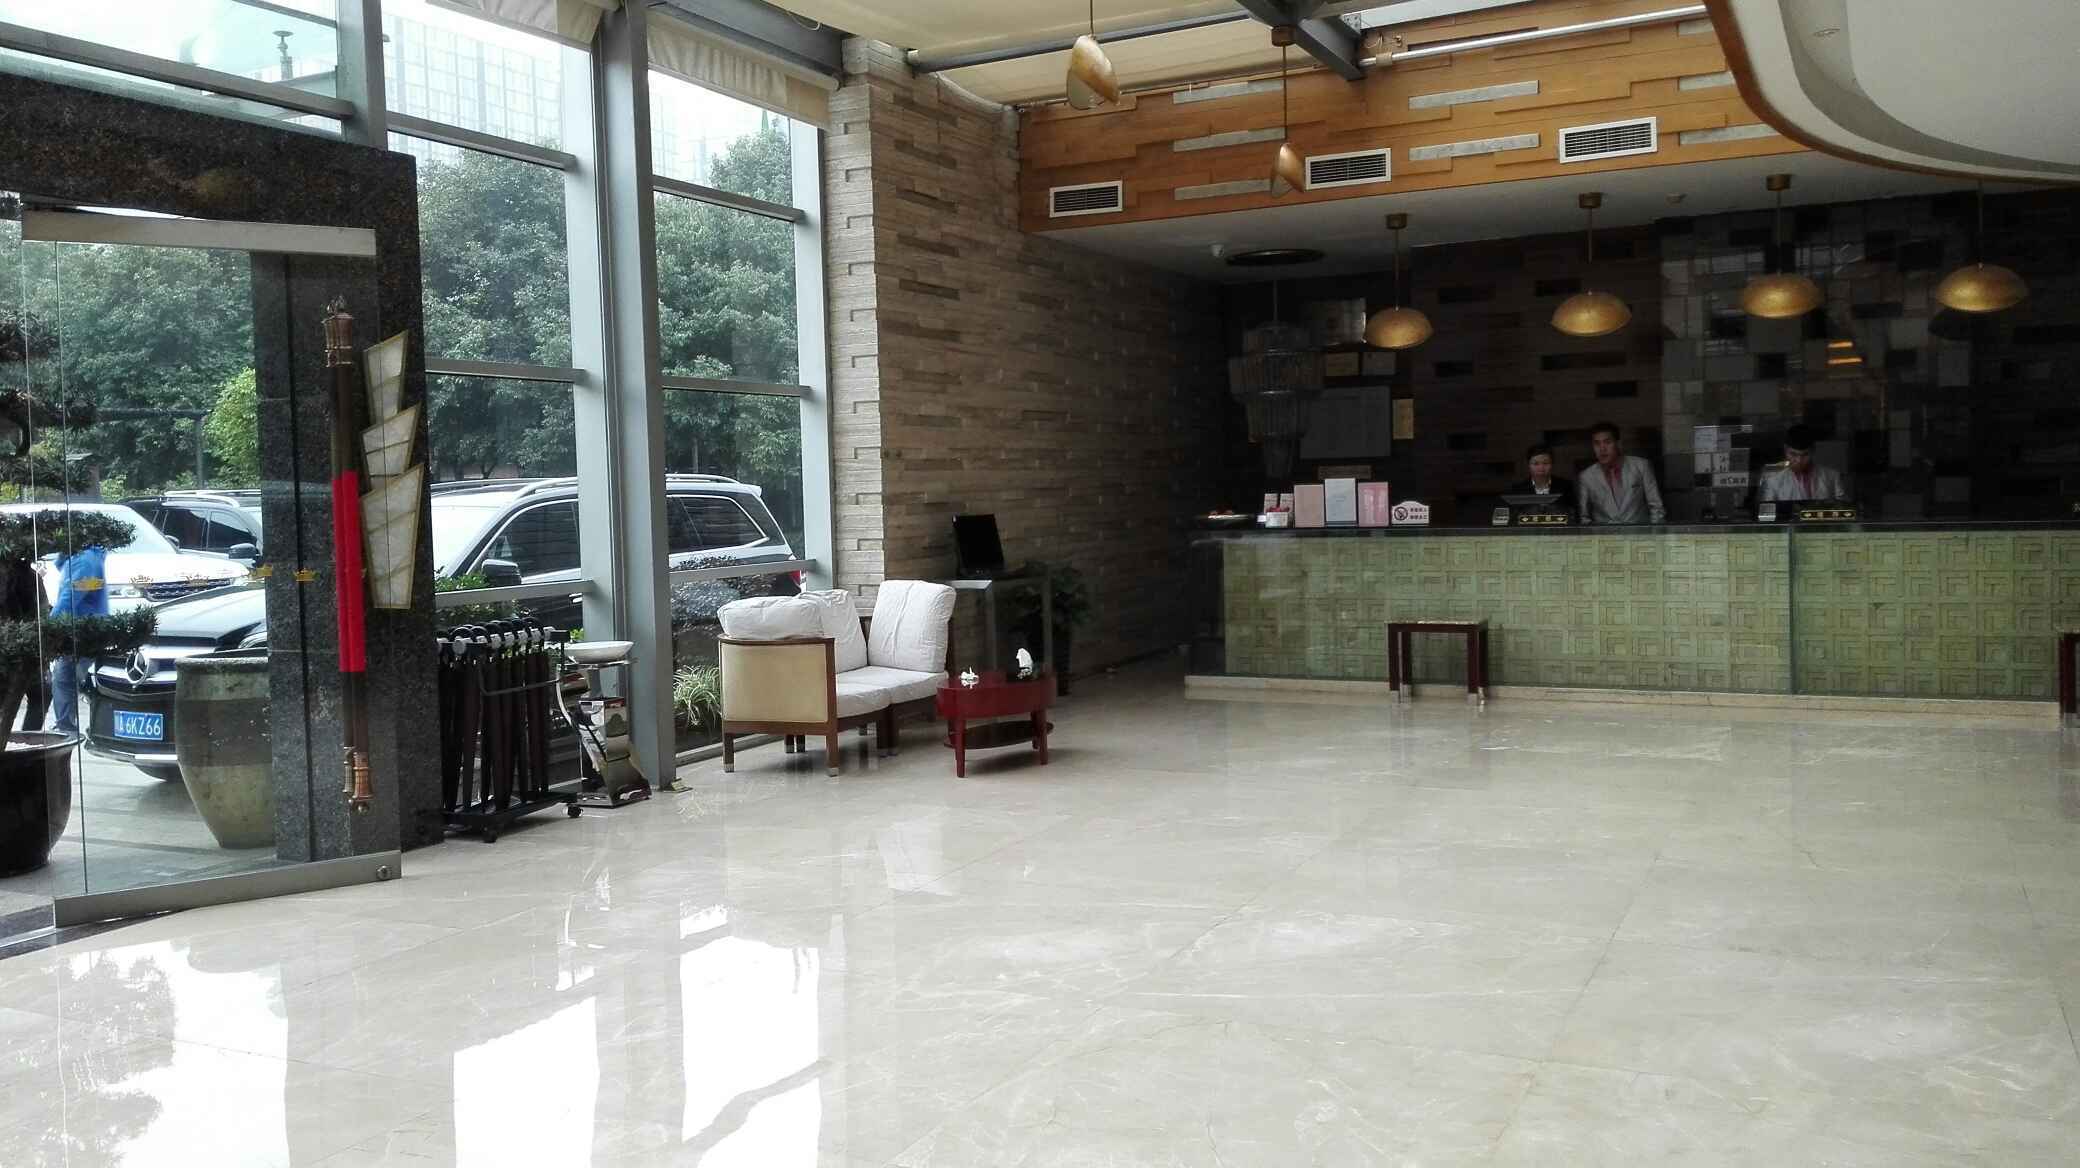 成都湖璟酒店图片